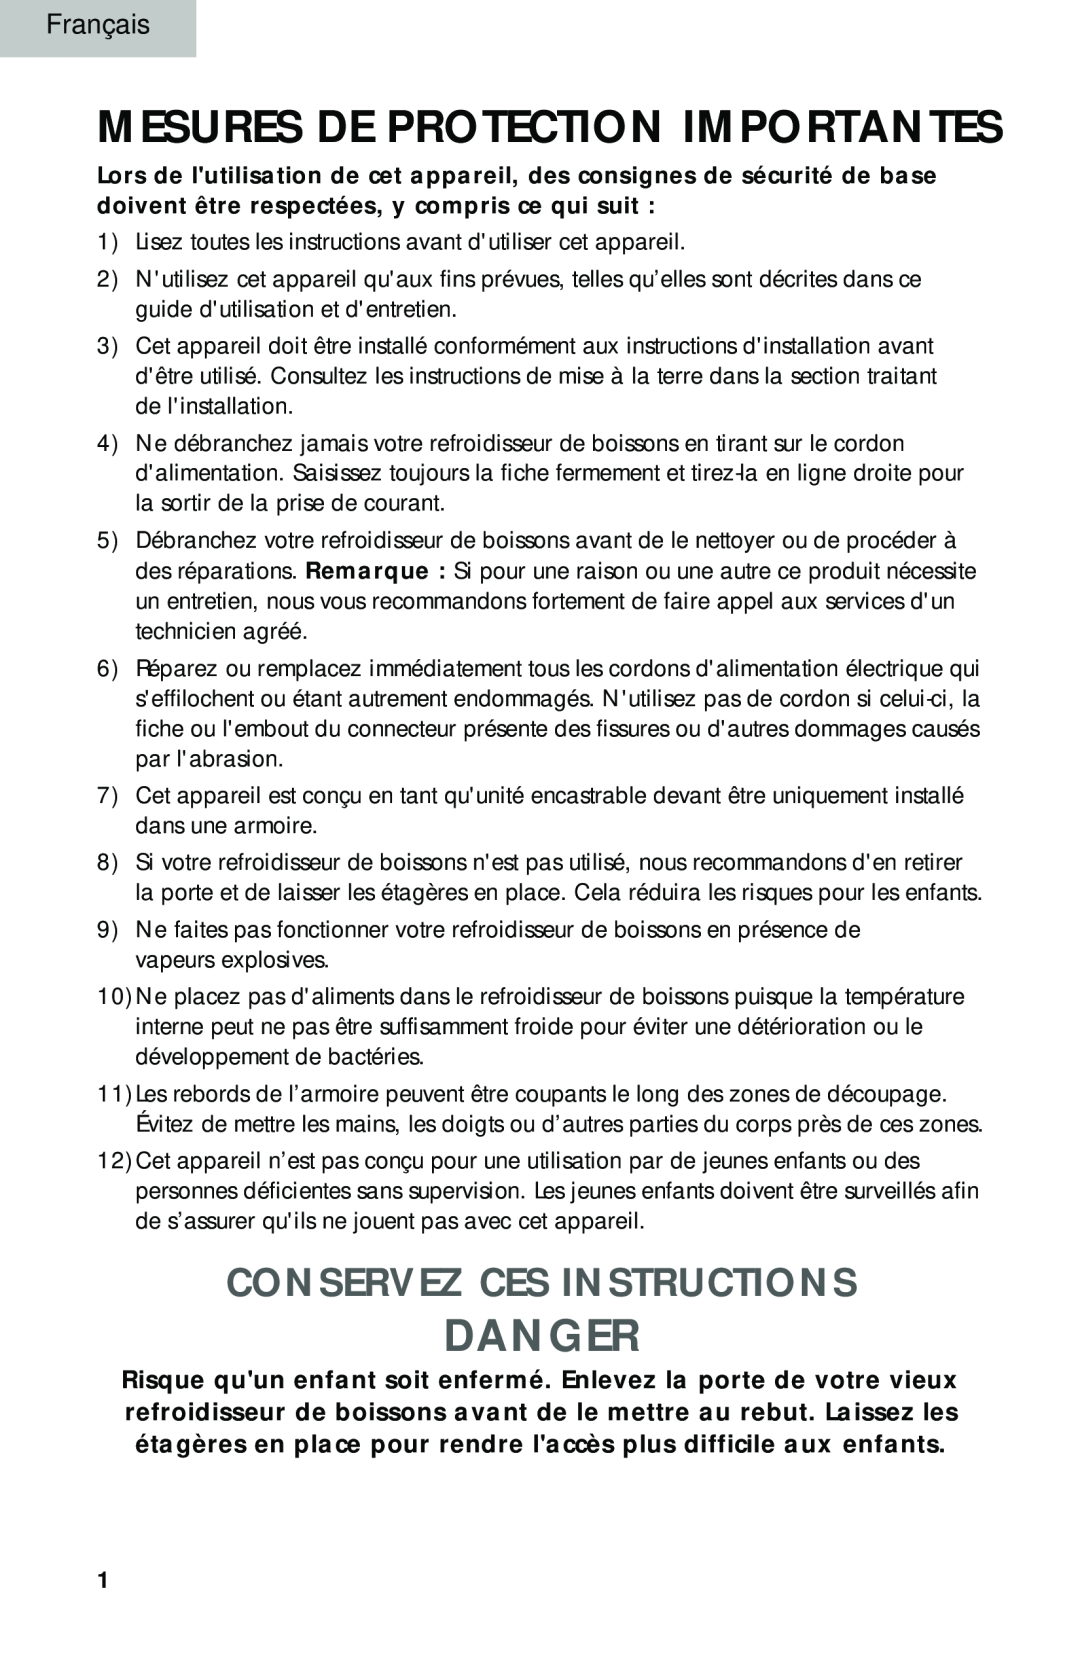 Haier BC100GS manual Mesures De Protection Importantes, Danger, Conservez Ces Instructions 